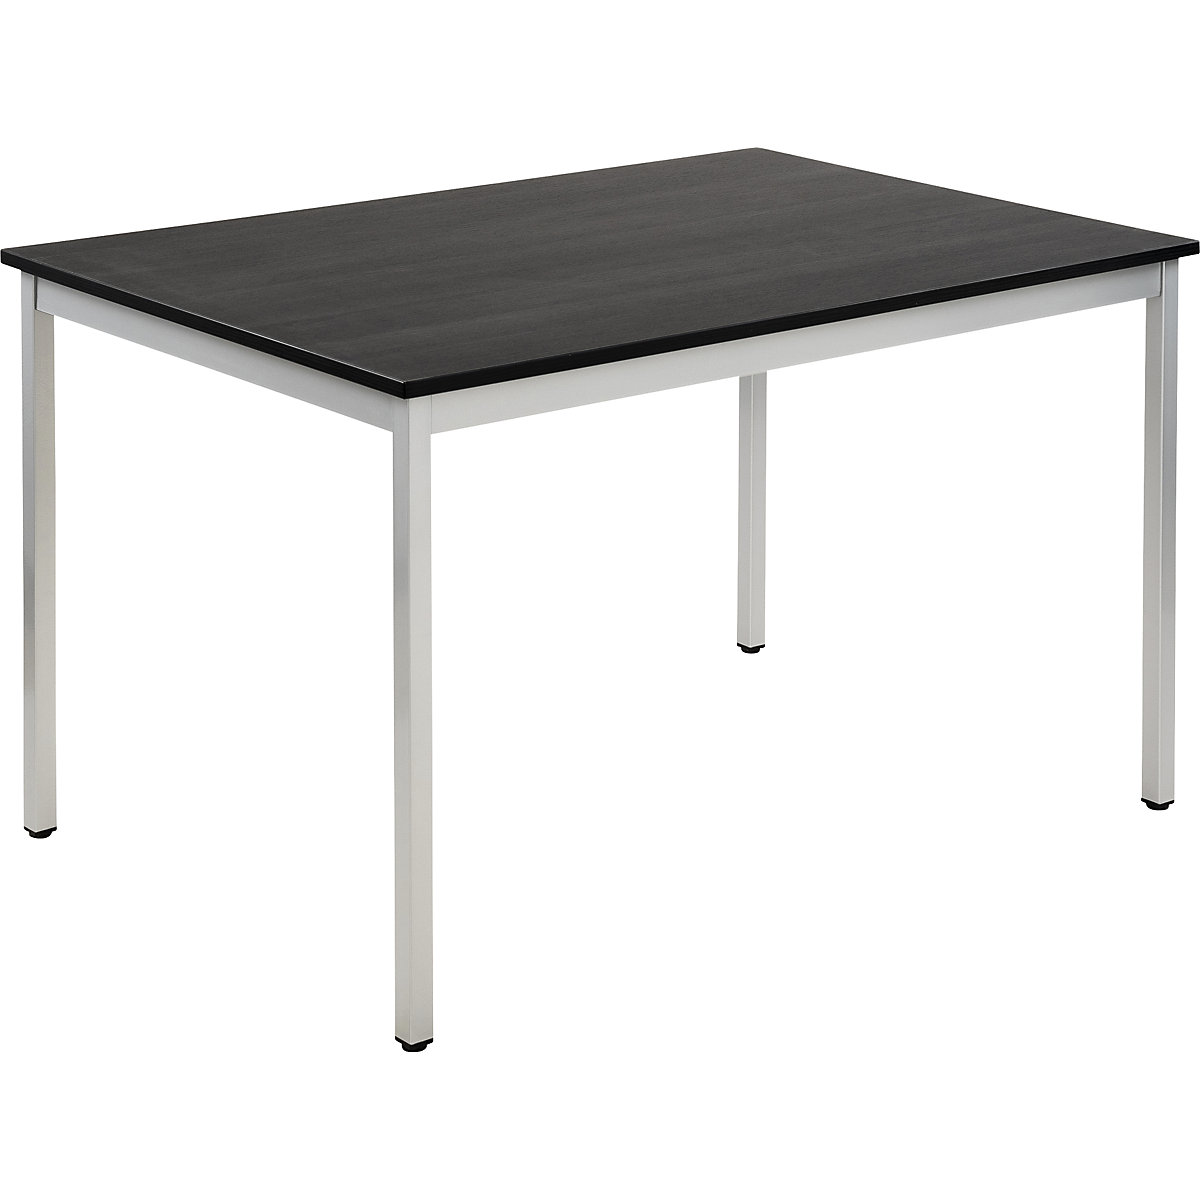 Višenamjenski stol – eurokraft basic, pravokutna izvedba, ŠxV 1200 x 740 mm, dubina 800 mm, ploča u imitaciji jasena u tamnosivoj boji, postolje u aluminij bijeloj boji-19